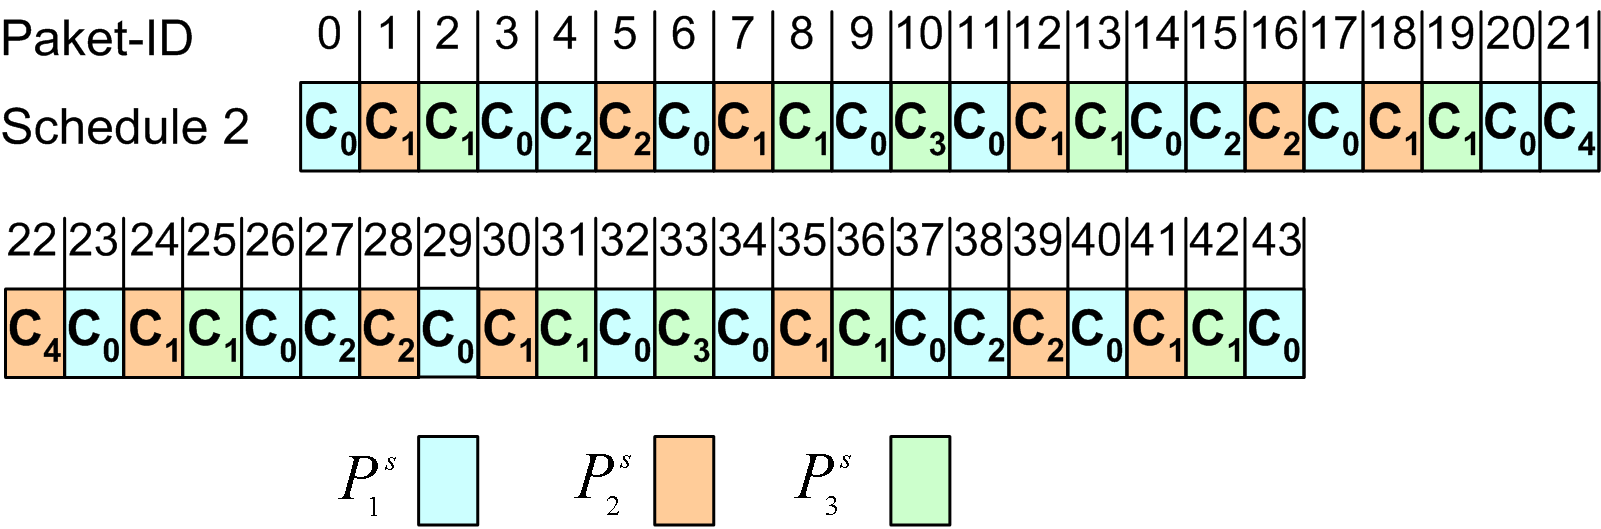 74 6. Entwurf Dabei wird zuerst der linke Teilbaum rekursiv behandelt, danach der Wurzelknoten und zum Schluss erfolgt eine rekursive Betrachtung des rechten Teilbaums. Abbildung 6.9.